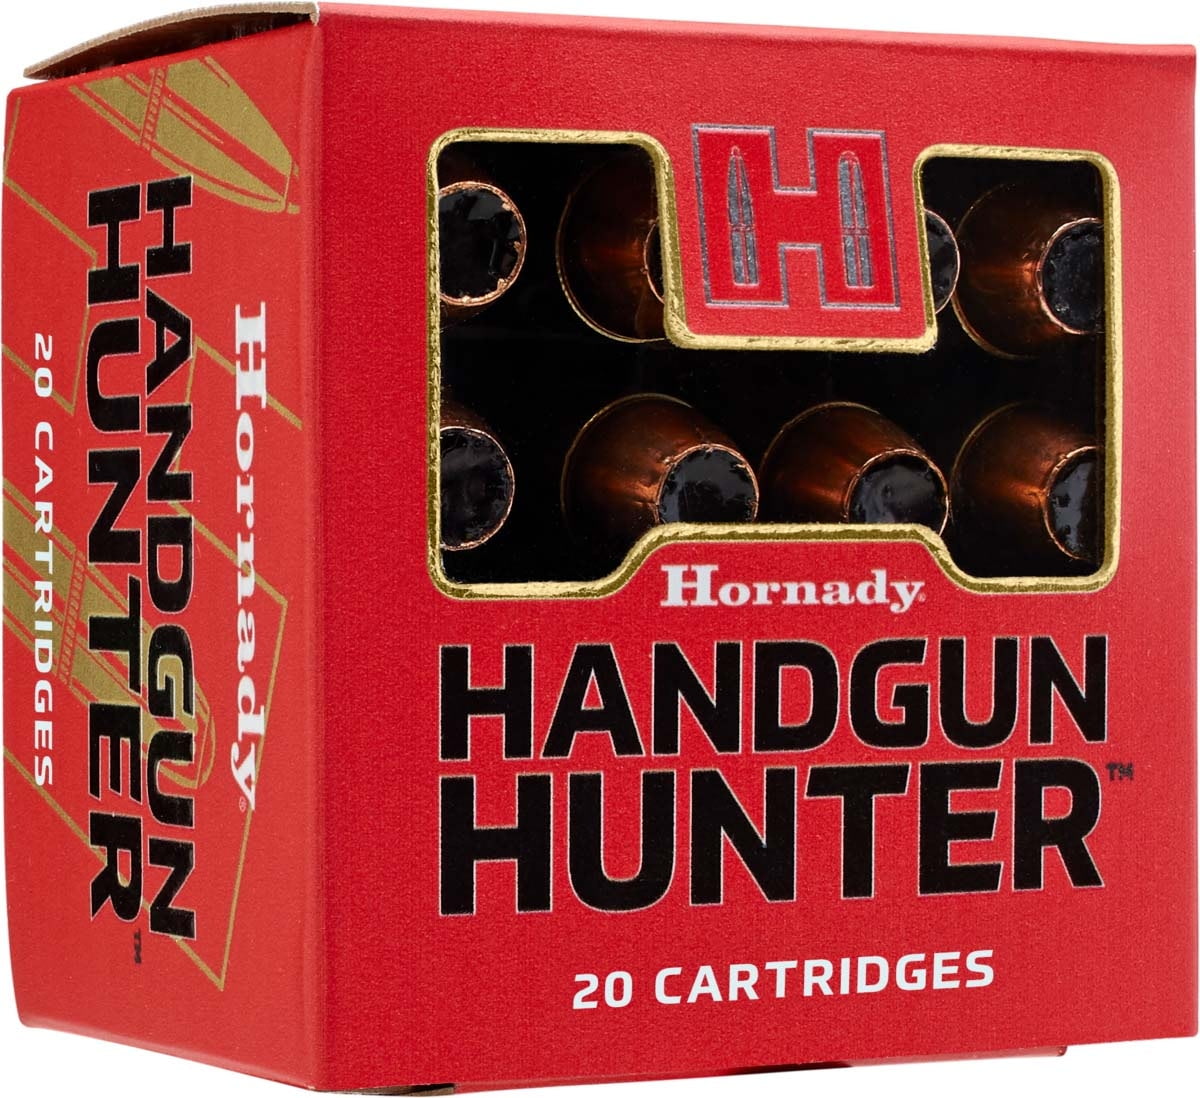 Hornady Handgun Hunter 7-30 Waters 200 grain Flex Tip Brass Cased Centerfire Pistol Ammunition